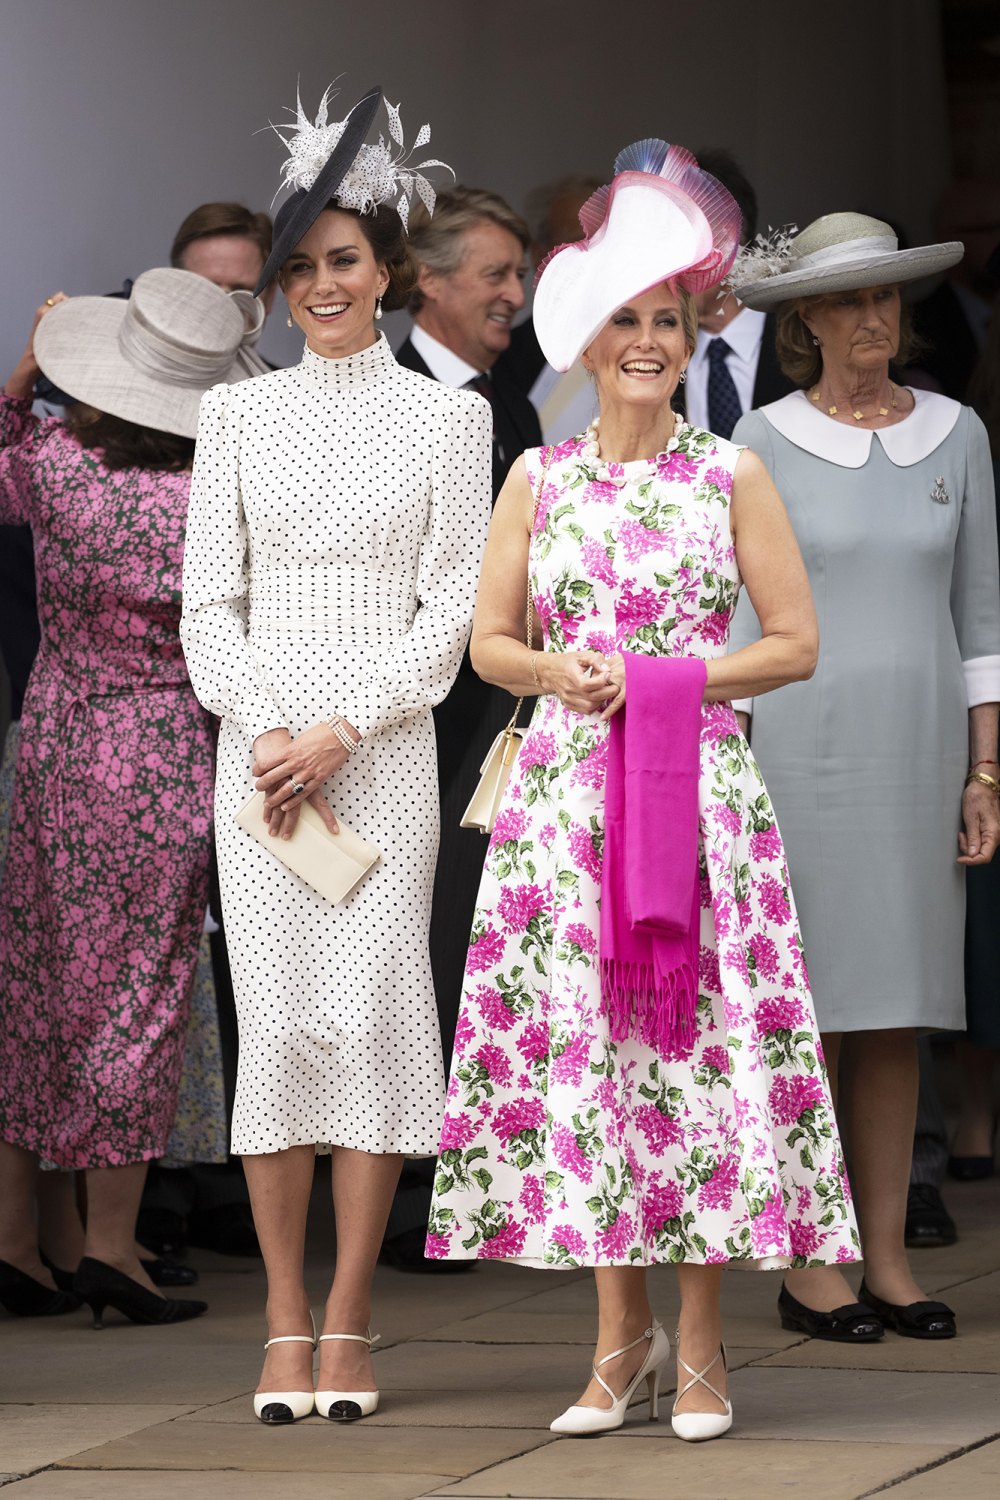 Kate Middleton Wears Polka Dot Dress for Order of the Garter: Pics ...